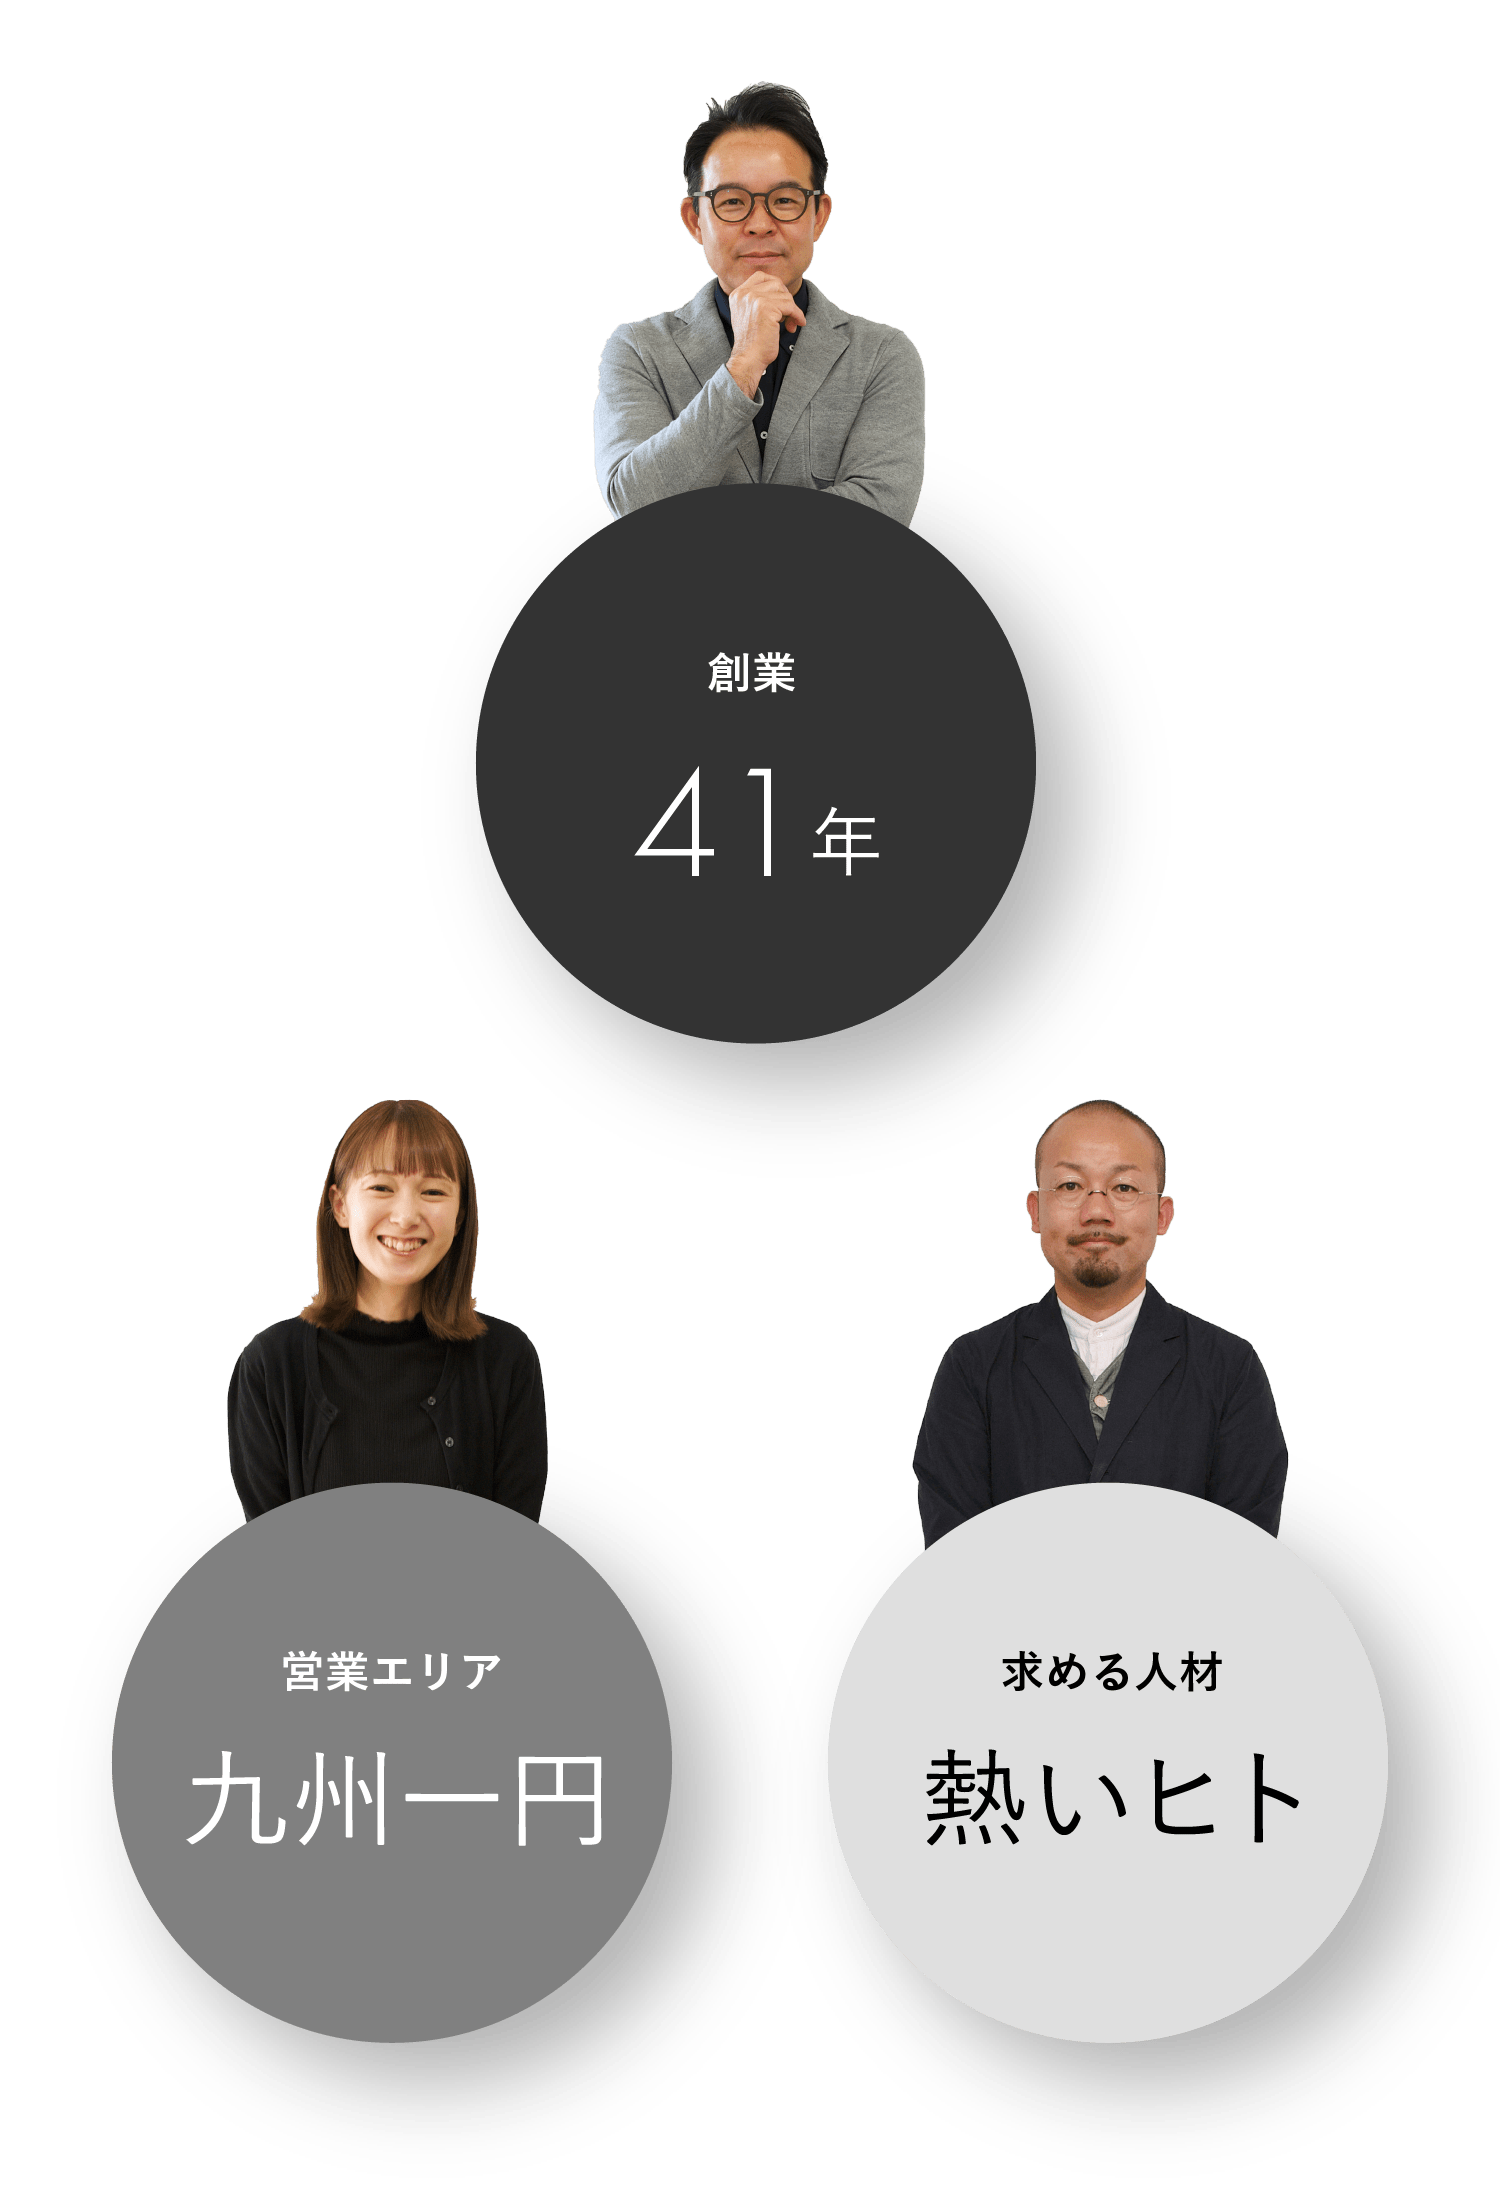 創業-41年 営業エリア-九州一円 求める人材-熱いヒト